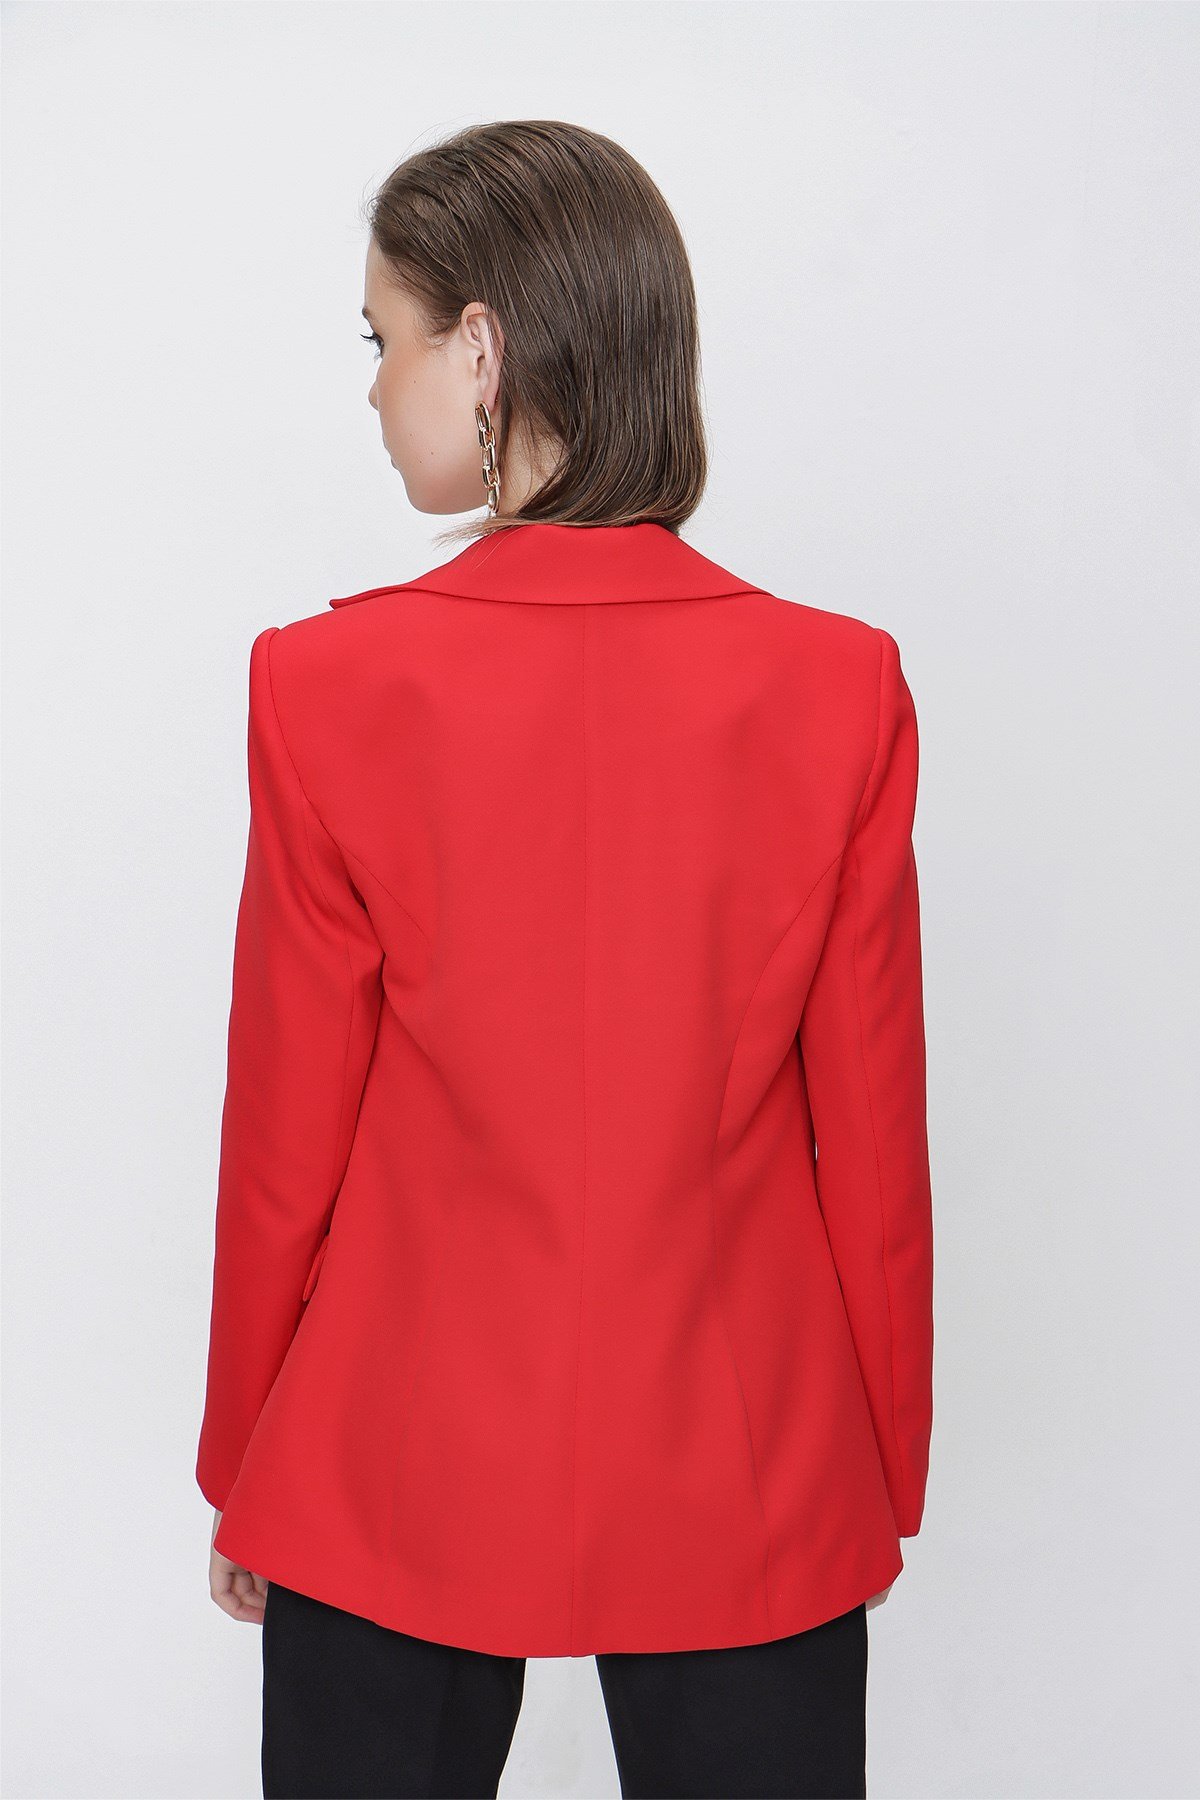 Kadın Kırmızı Cep Kapak Zincirli Ceket - Butik Buruç